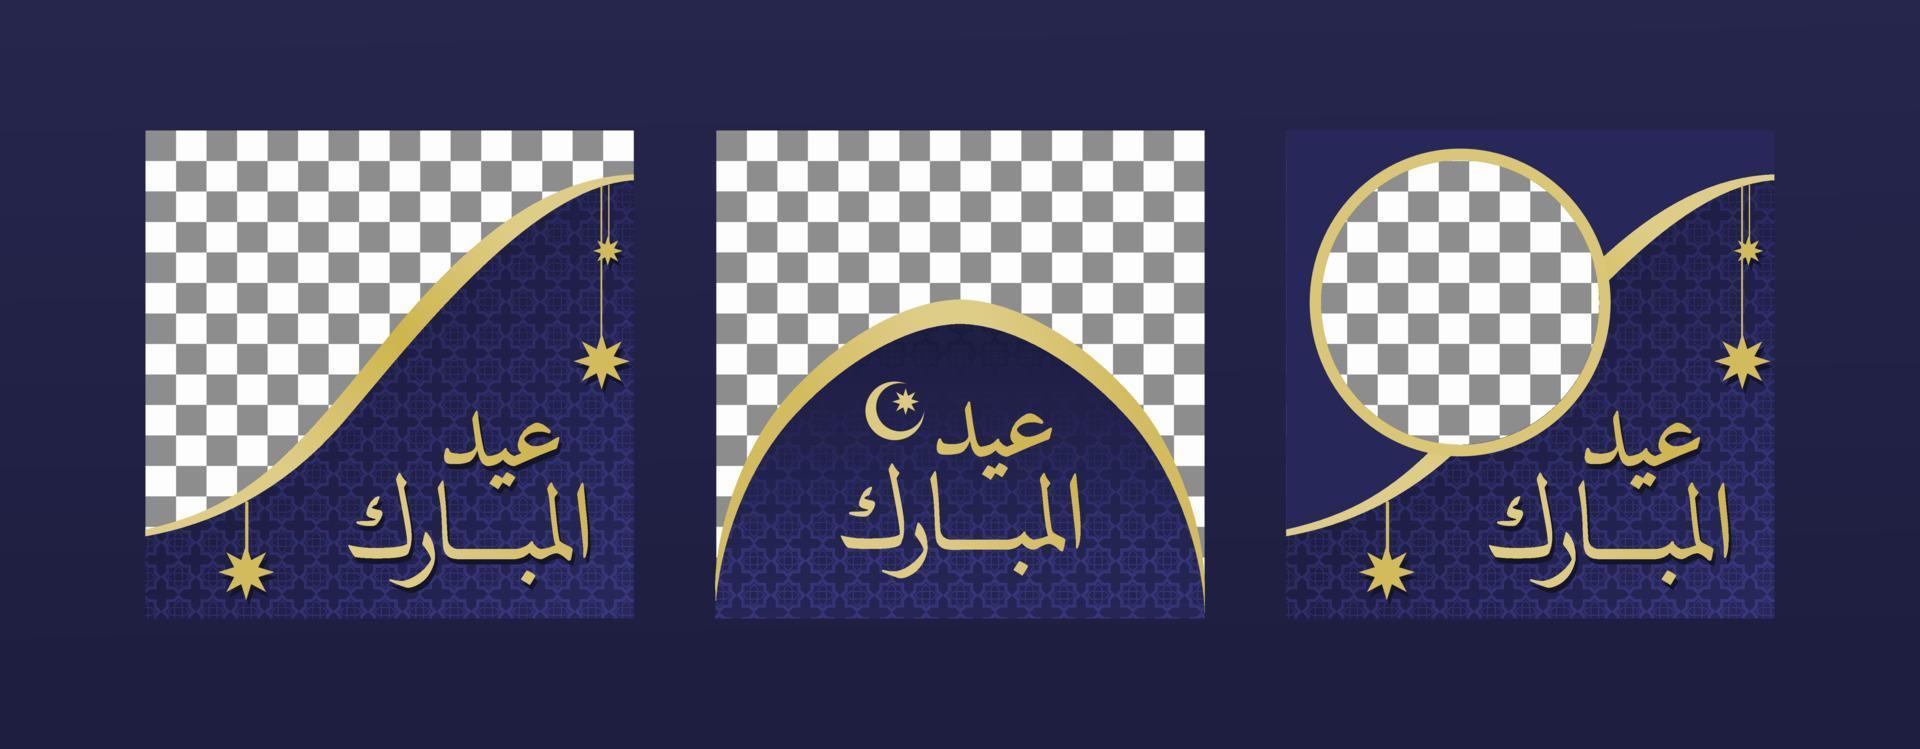 modelo de quadro vetorial eid mubarak borda dourada para o dia de celebração muçulmano eid fitr com feed de pôster de caligrafia árabe vetor